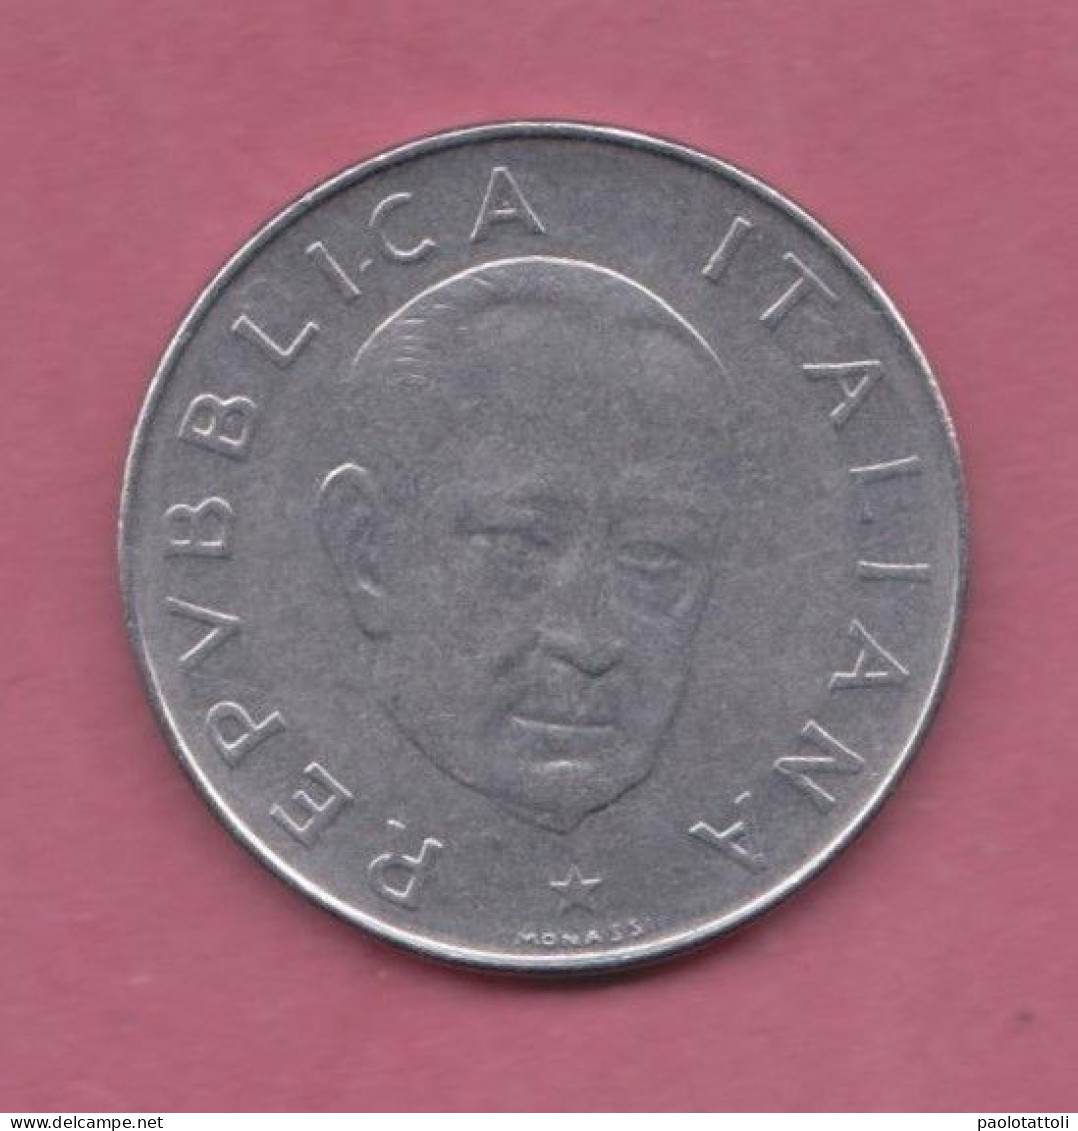 Italia, 1974- 100 Lire - Circulating Commemorative Coin- Acmonital- Obverse Facing Head Of Guglielmo Marconi. - 100 Lire